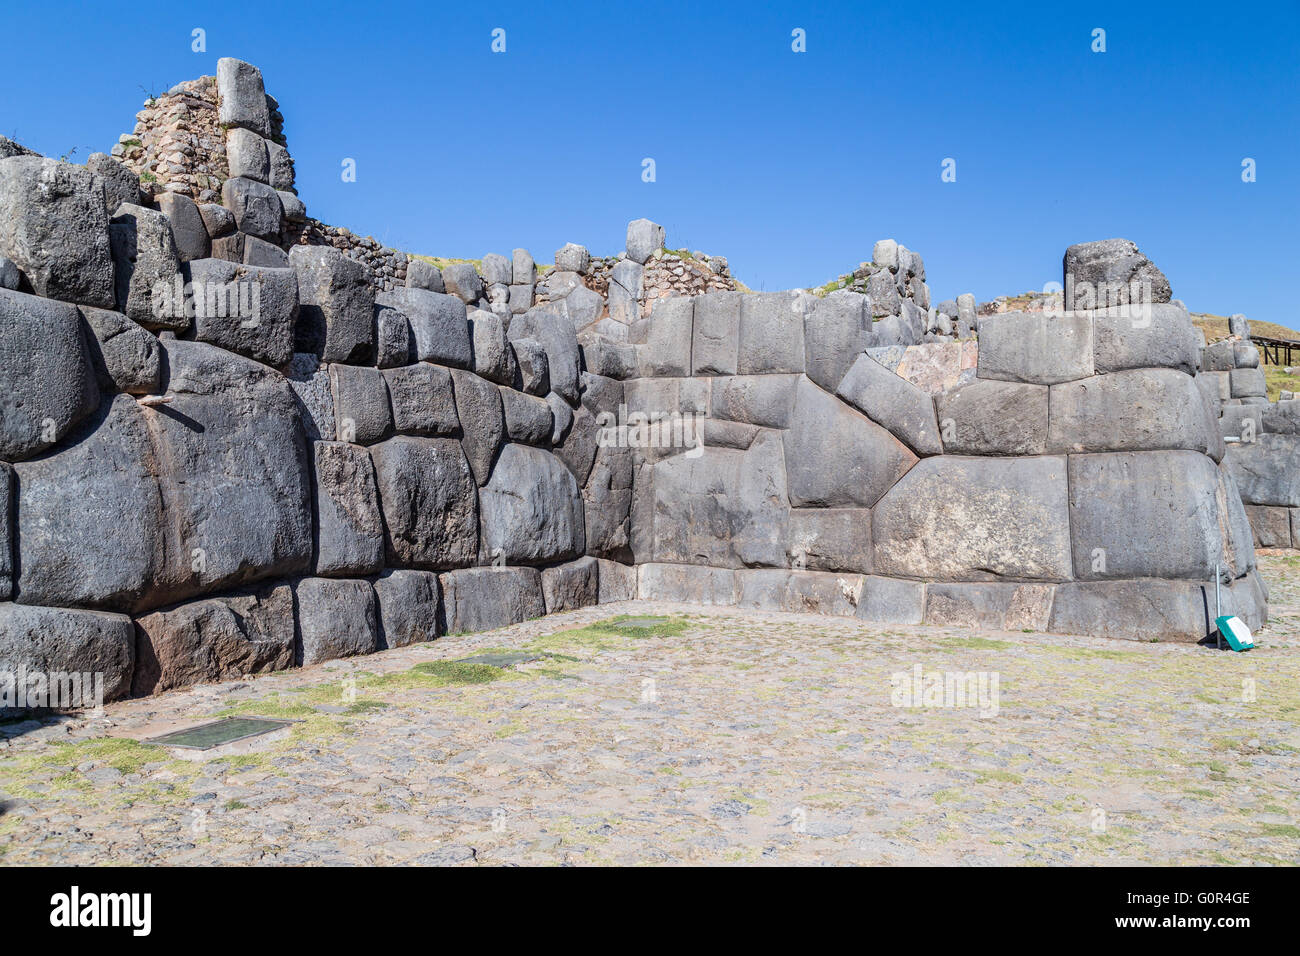 Stone Walls at Saksaywaman, Saqsaywaman, Sasawaman, Saksawaman, Sacsahuayman, Sasaywaman or Saksaq Waman fortress in Cusco, Peru Stock Photo